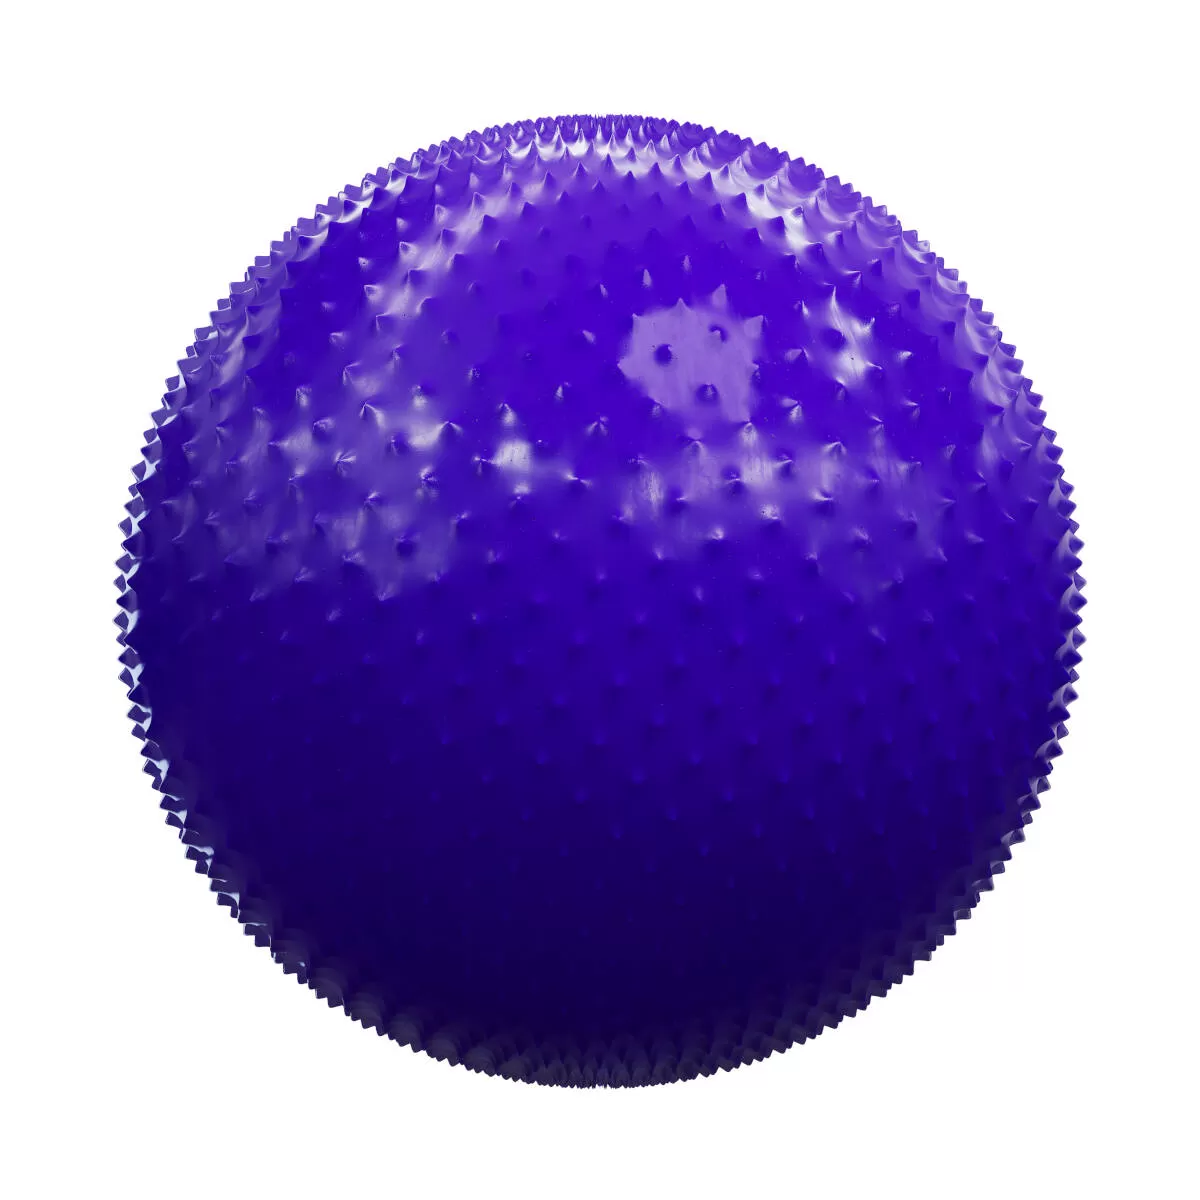 PBR Textures Volume 44 – Plastic – 4K – 8K – purple_spiked_plastic_41_17